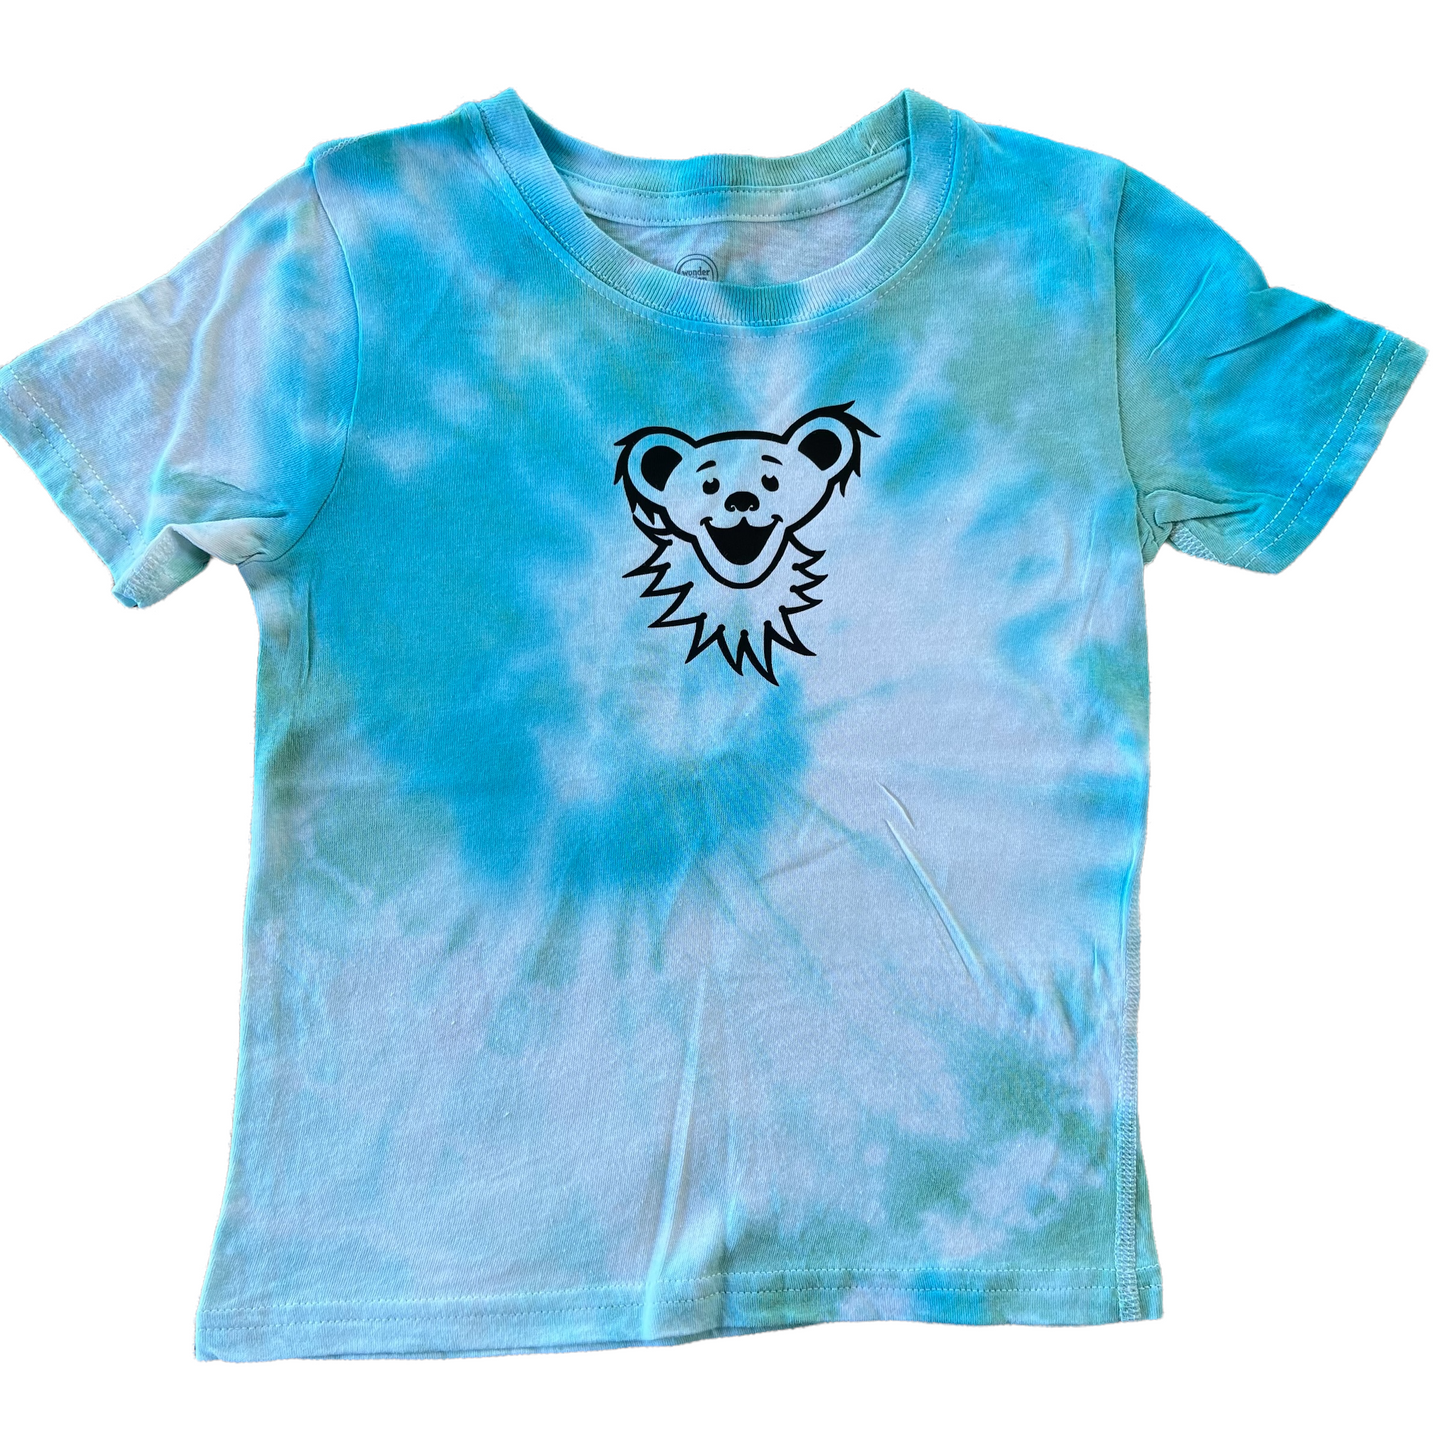 4t/5t kids dye shirt - bear